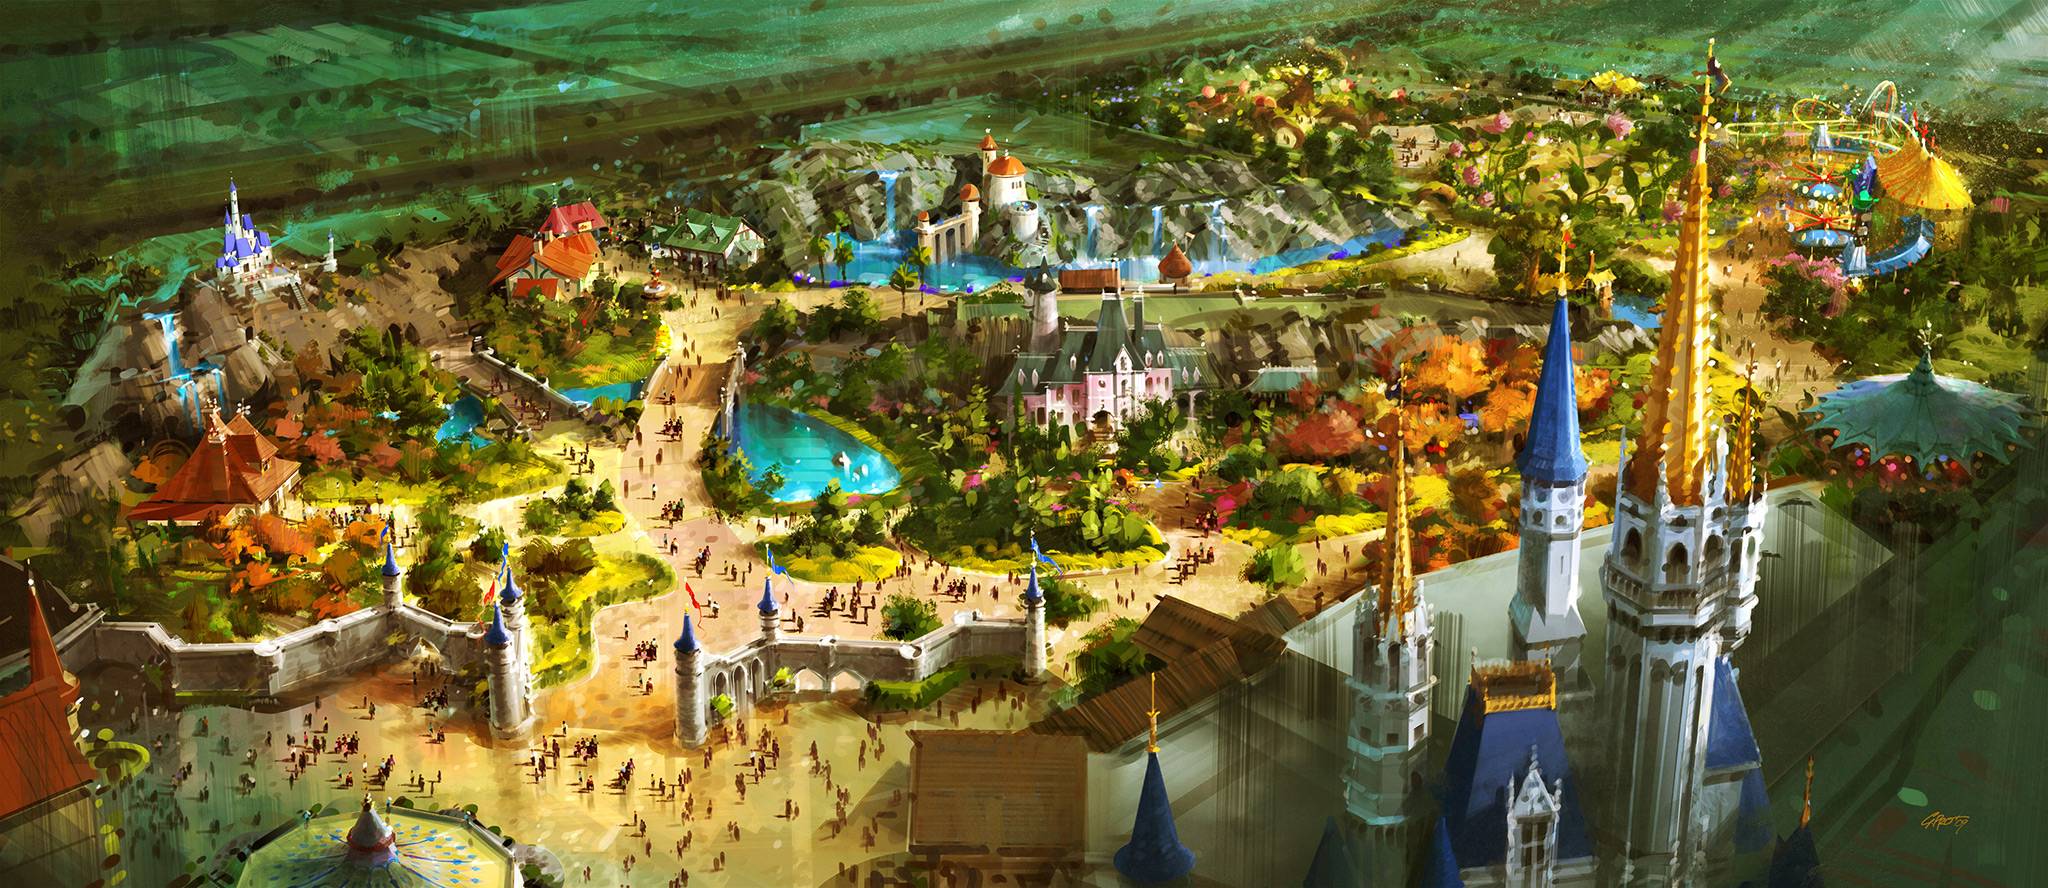 New Fantasyland concept art